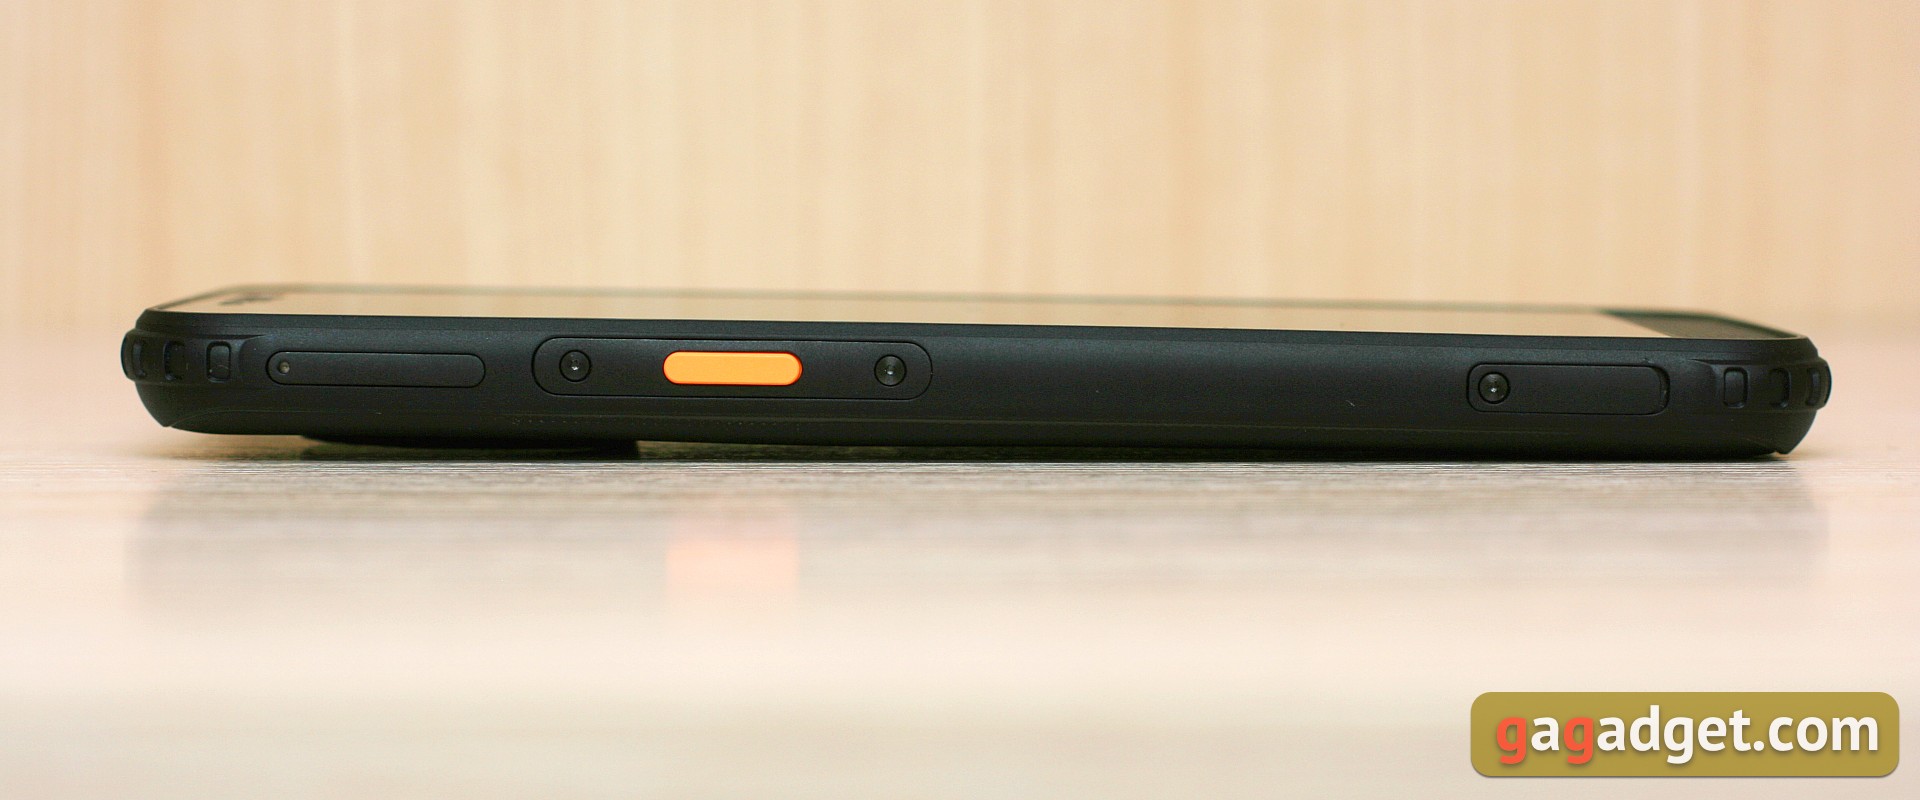 Обзор AGM H3: защищённый смартфон с камерой ночного видения -11